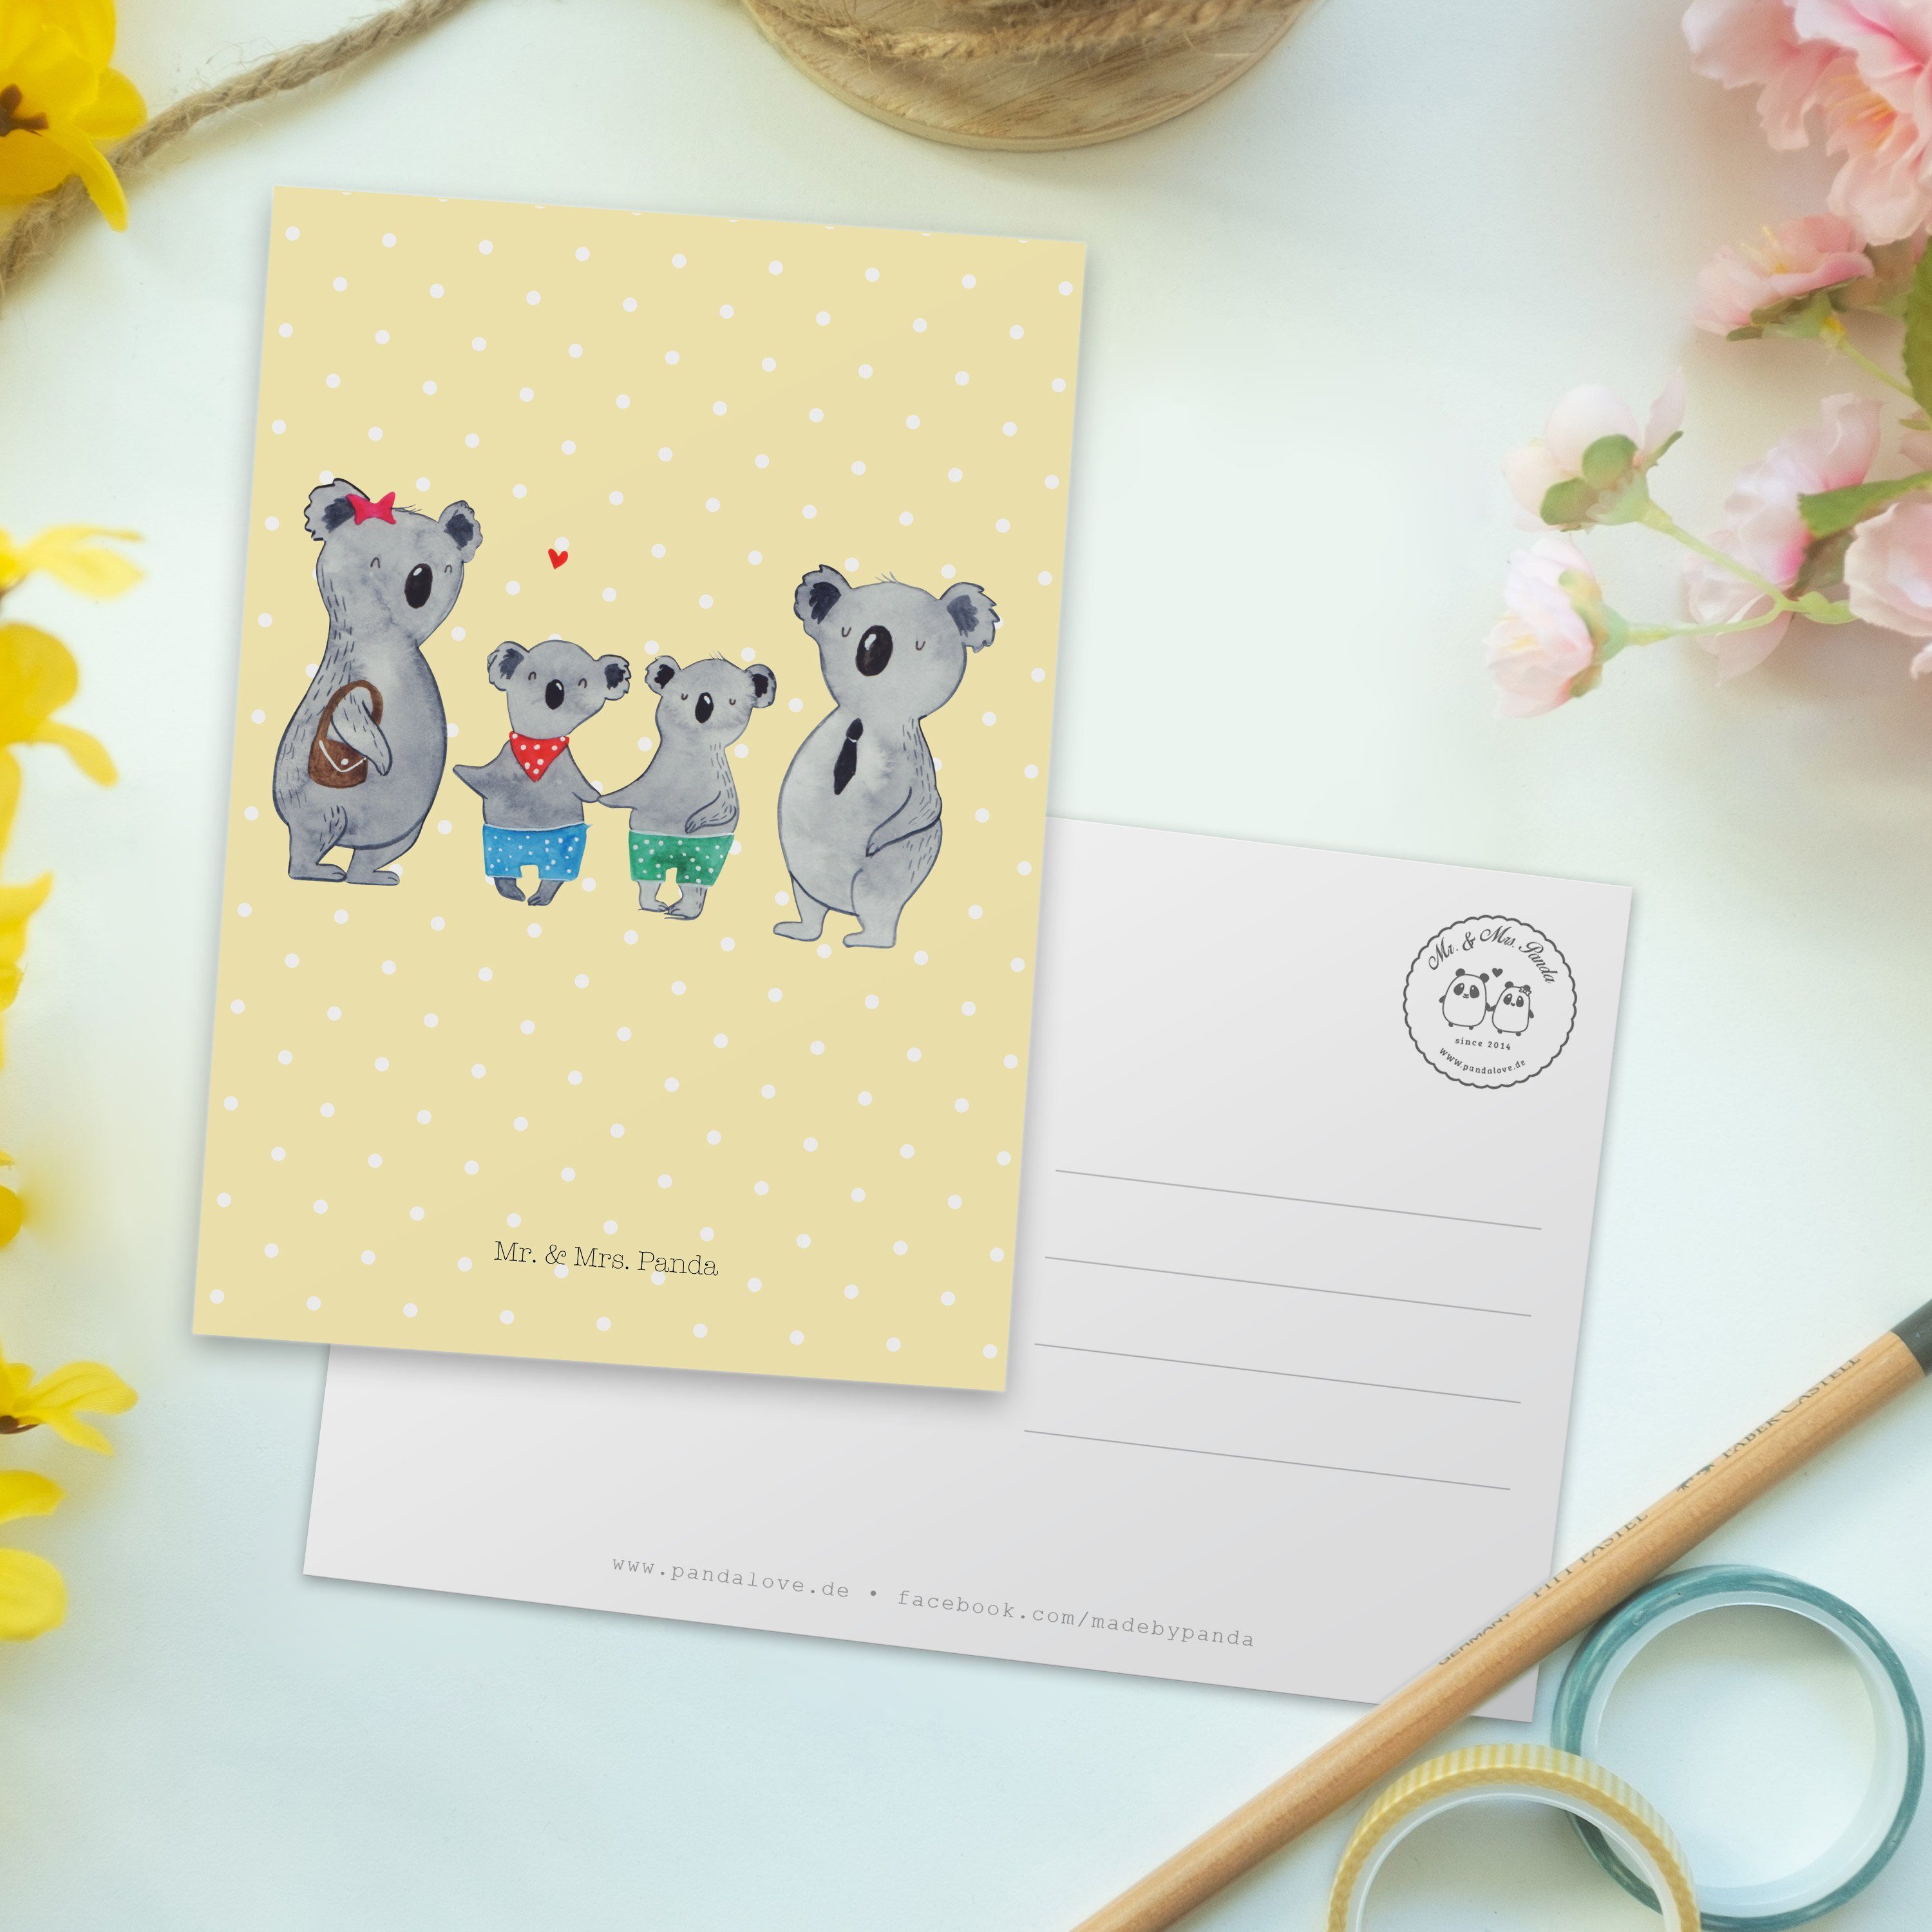 Mr. & Mrs. Panda Gelb Koalabär, Koala Familie Postkarte Ansichtskarte - zwei Geschenk, Pastell 